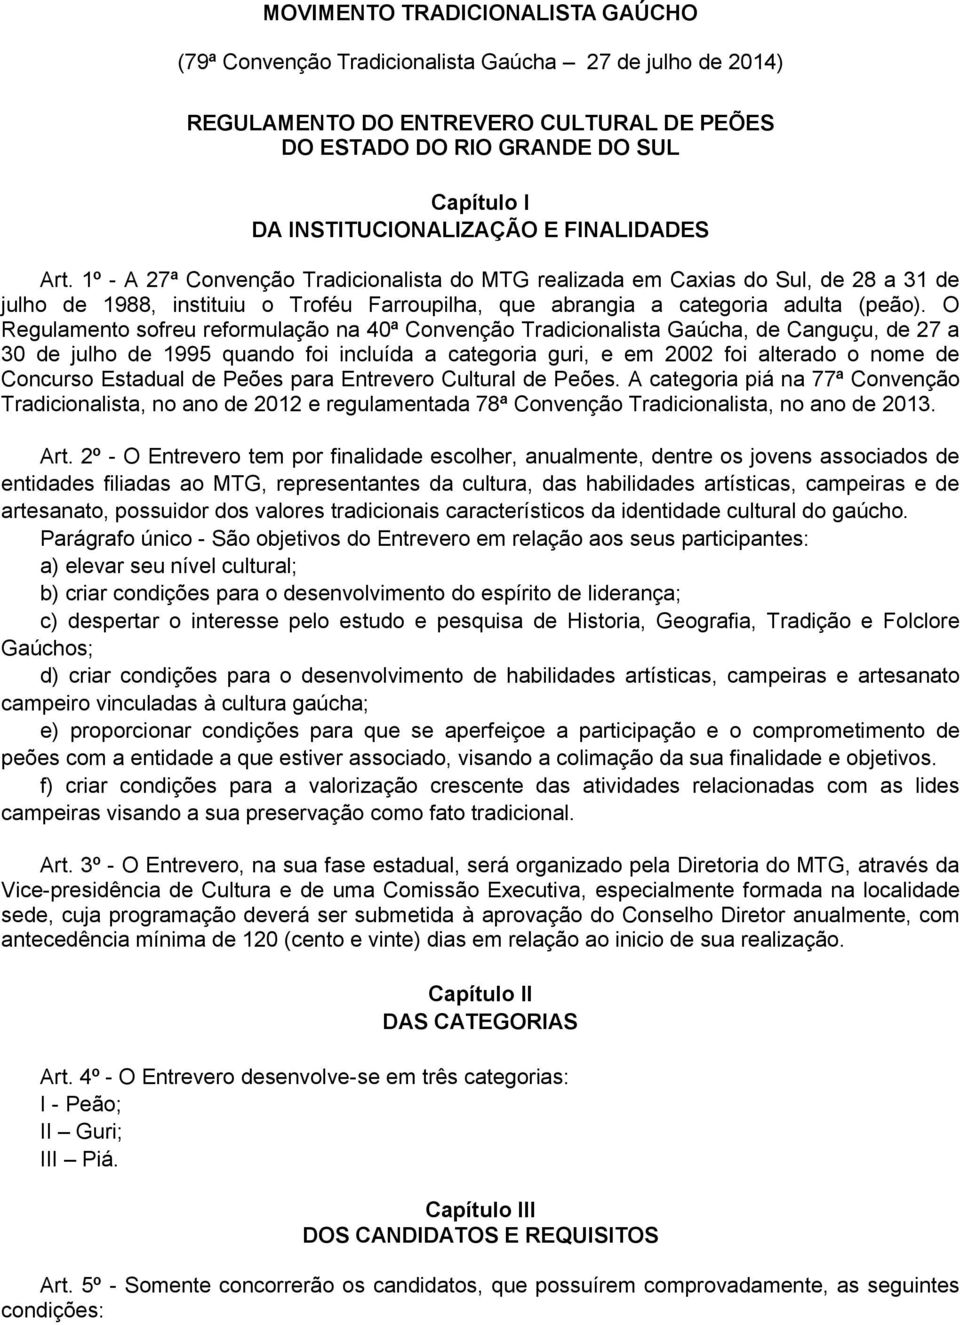 O Regulamento sofreu reformulação na 40ª Convenção Tradicionalista Gaúcha, de Canguçu, de 27 a 30 de julho de 1995 quando foi incluída a categoria guri, e em 2002 foi alterado o nome de Concurso